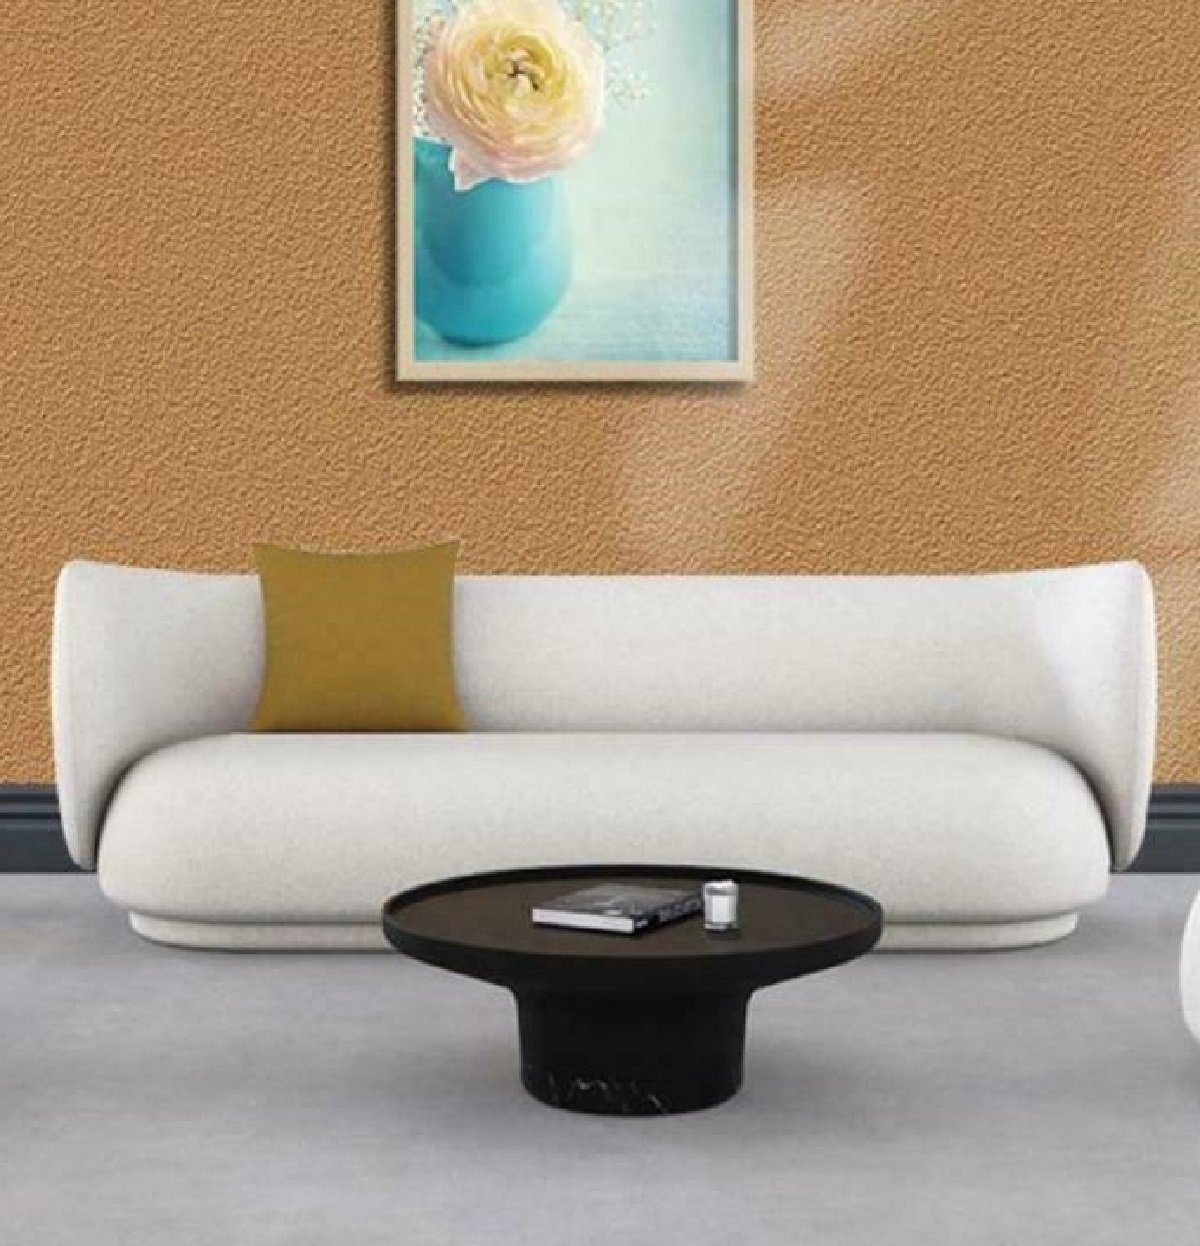 JVmoebel Sofa Weißes Sofa Sitz Weiß | Sofas Samt 2-Sitzer Weiß Weiß Lounge Design Relax | Möbel Möbel, Couch